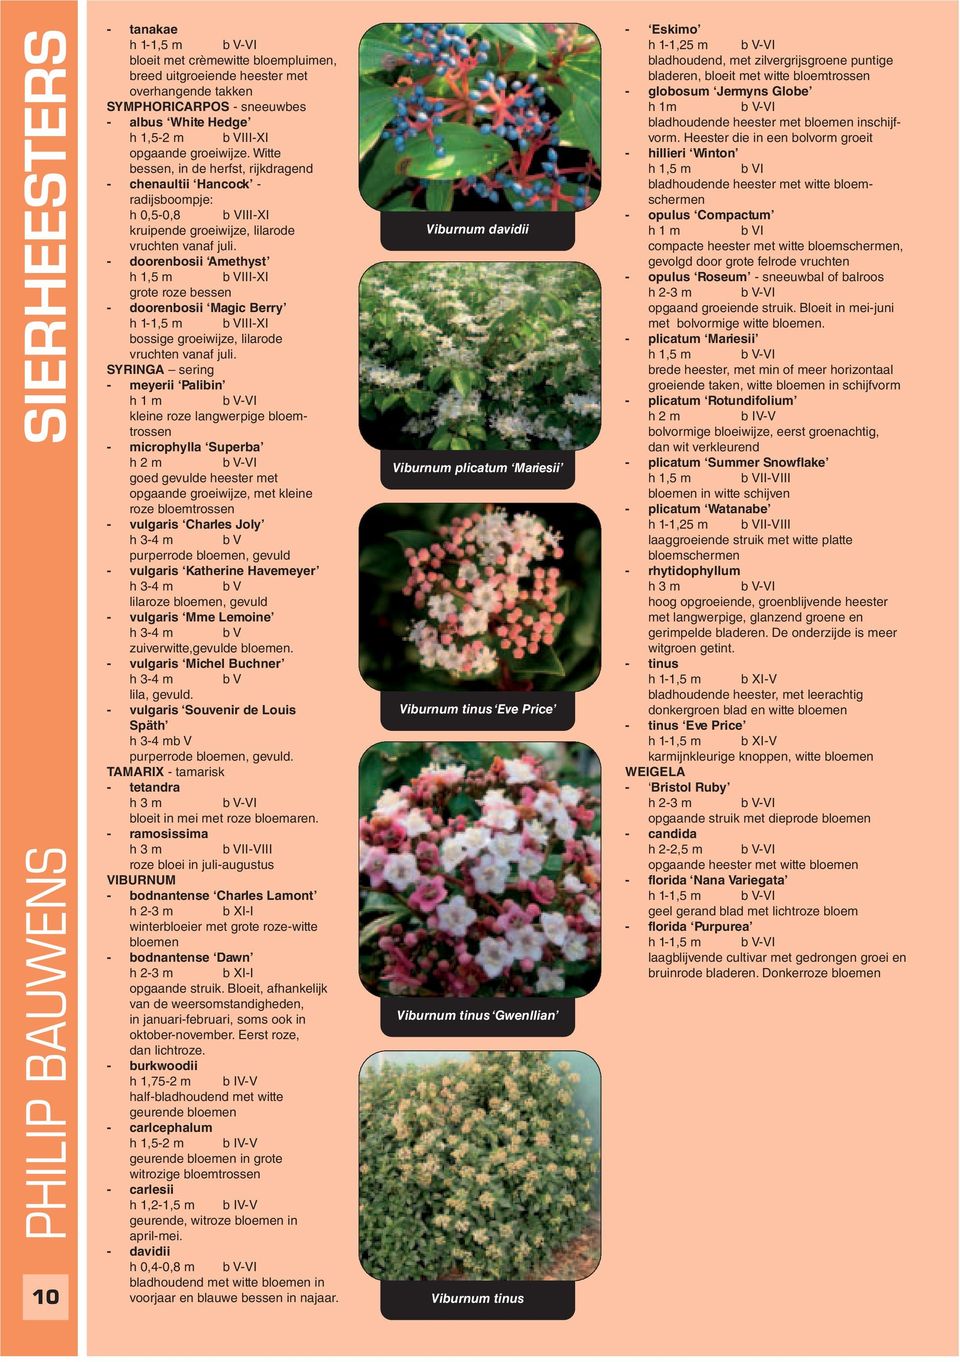 - doorenbosii Amethyst h 1,5 m b VIII-XI grote roze bessen - doorenbosii Magic Berry h 1-1,5 m b VIII-XI bossige groeiwijze, lilarode vruchten vanaf juli.